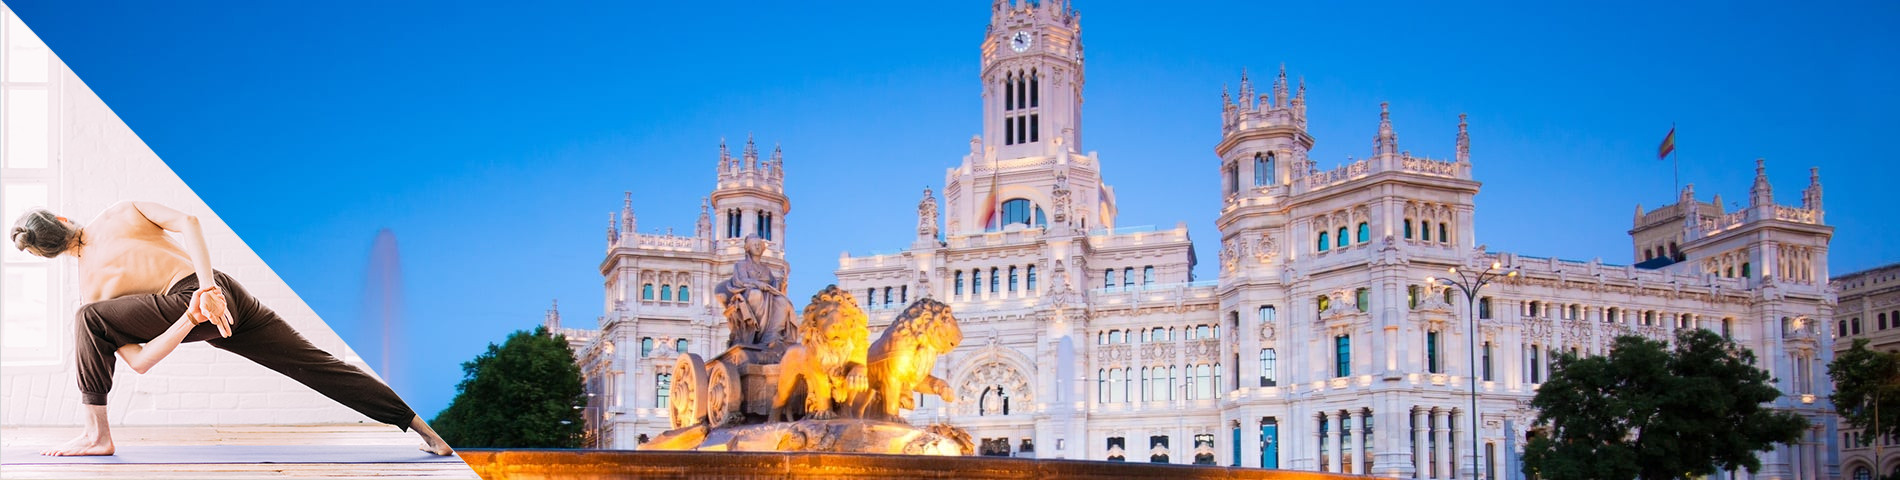 Madrid - Espanhol & Yoga